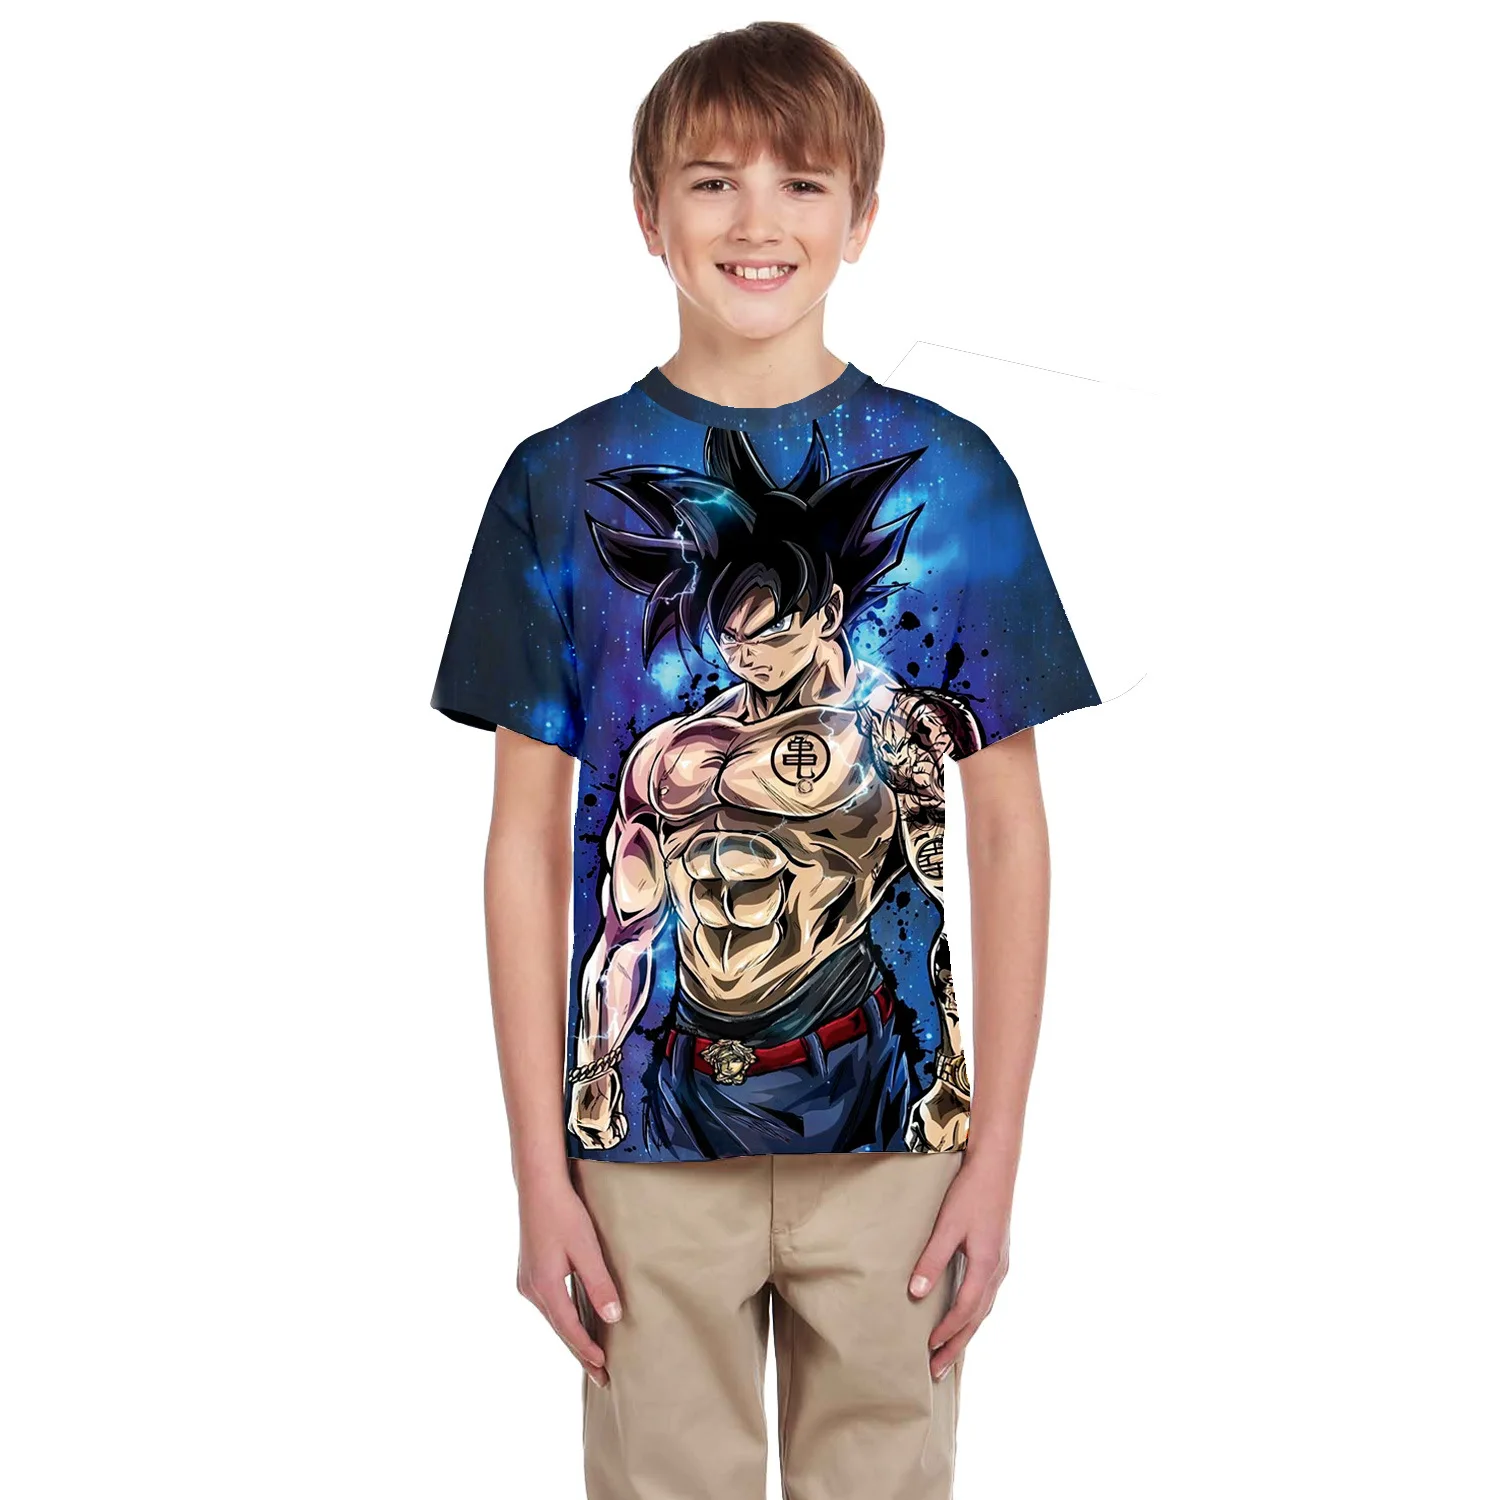 Детская футболка с короткими рукавами и 3D-принтом с персонажами из мультфильмов «Жемчуг дракона», Saiyan Son-Goku wukong, одежда для мальчиков и девочек